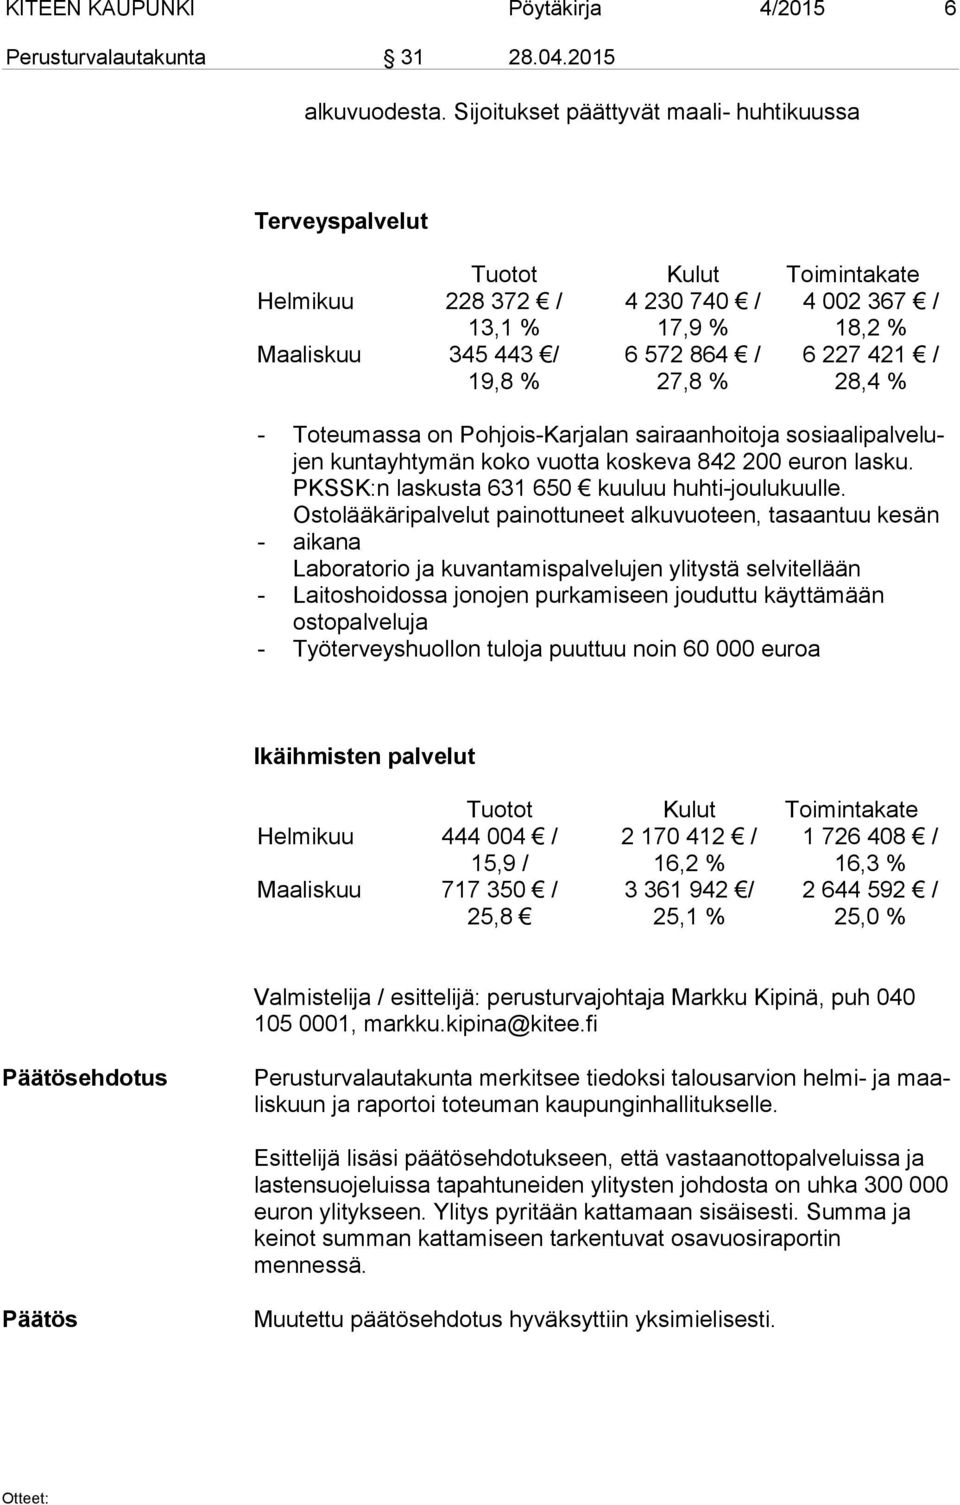 421 / 28,4 % - - - - Toteumassa on Pohjois-Karjalan sairaanhoitoja so si aa li pal ve lujen kuntayhtymän koko vuotta koskeva 842 200 euron lasku. PKSSK:n laskusta 631 650 kuuluu huhti-joulukuulle.